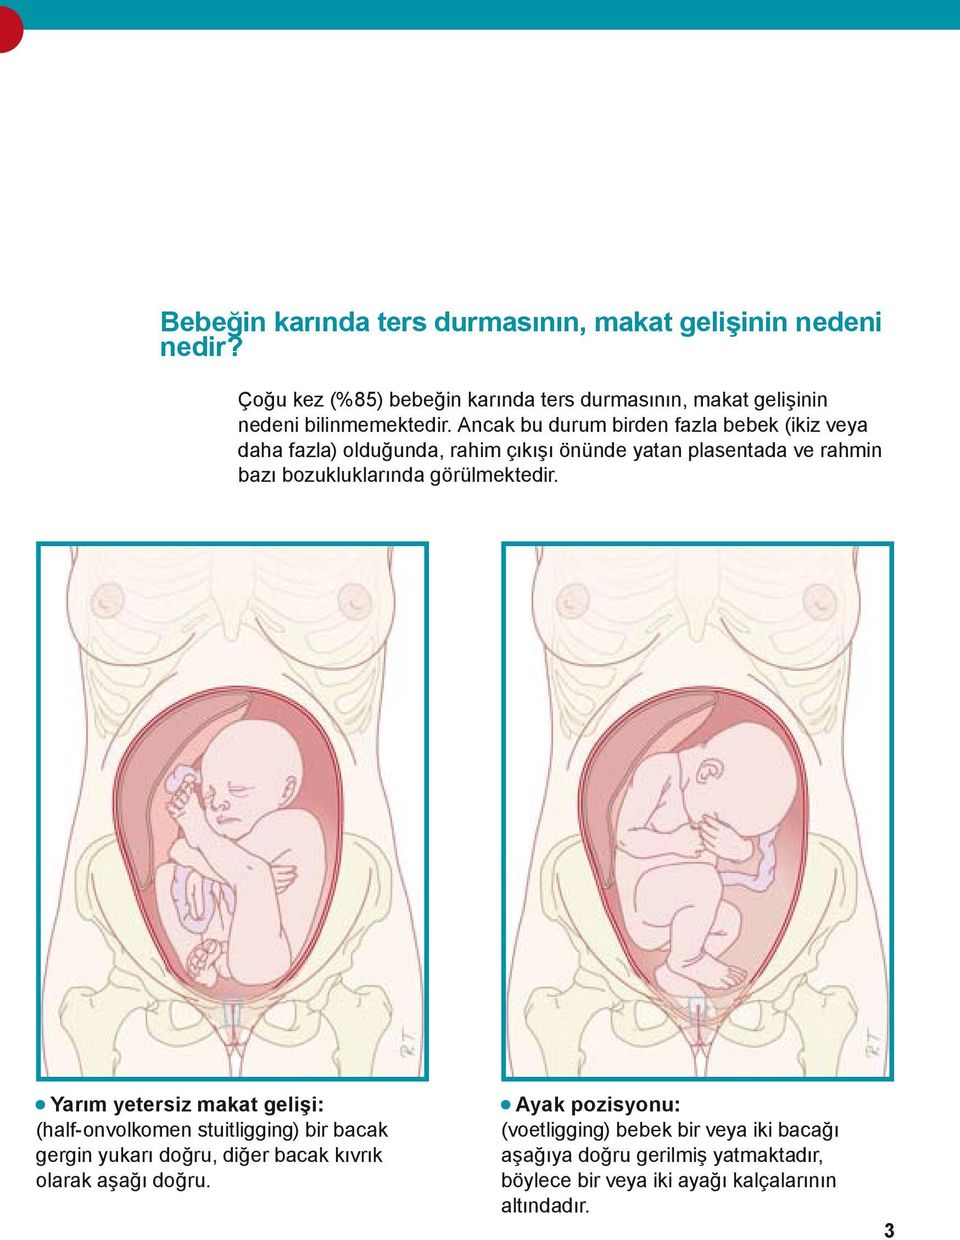 Ancak bu durum birden fazla bebek (ikiz veya daha fazla) olduğunda, rahim çıkışı önünde yatan plasentada ve rahmin bazı bozukluklarında